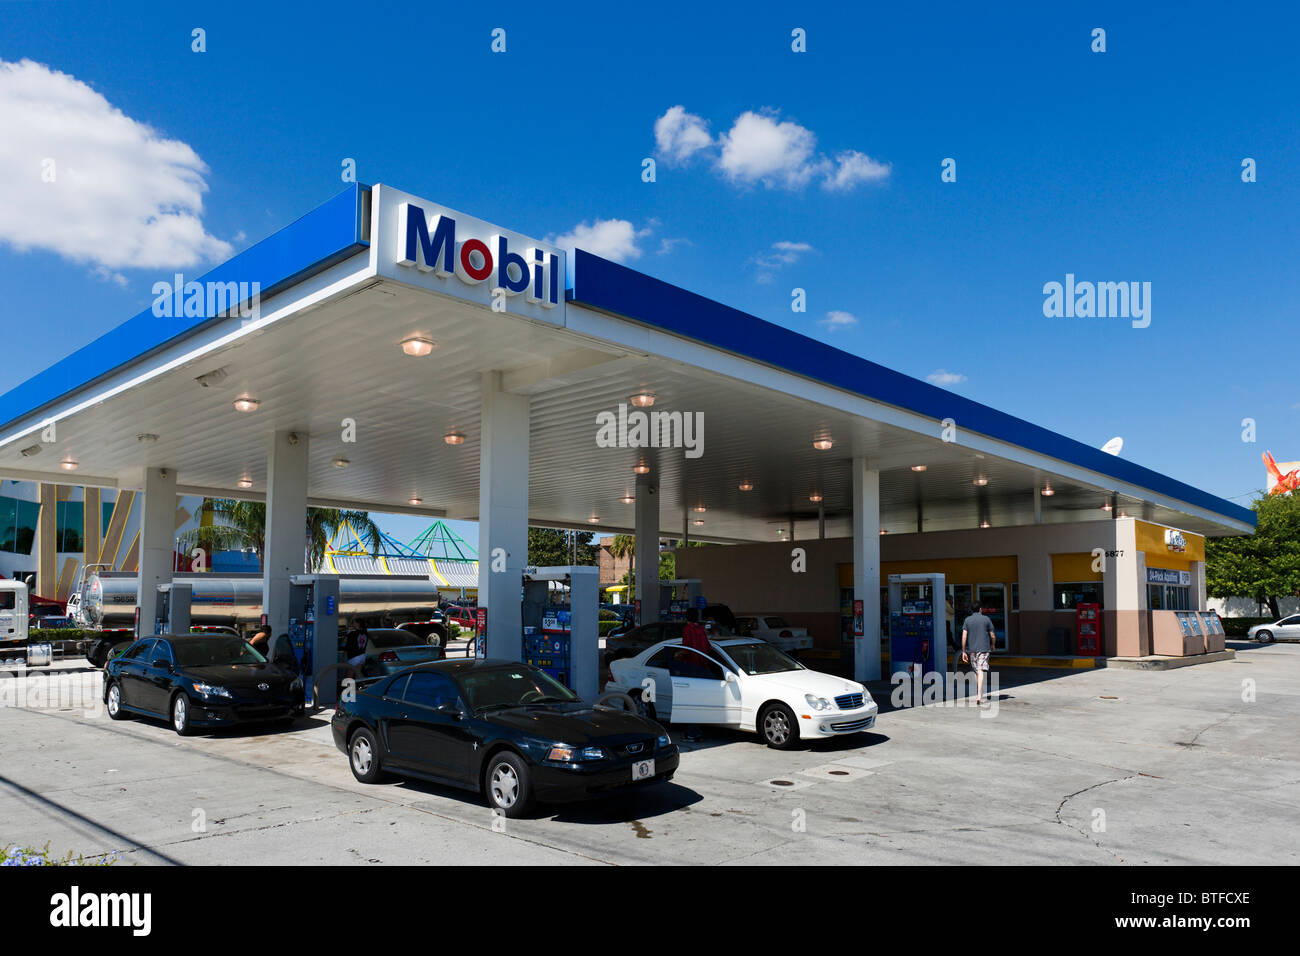 Le remplissage des voitures à une station d'essence Mobil, International Drive, Orlando, Floride, USA Central Banque D'Images